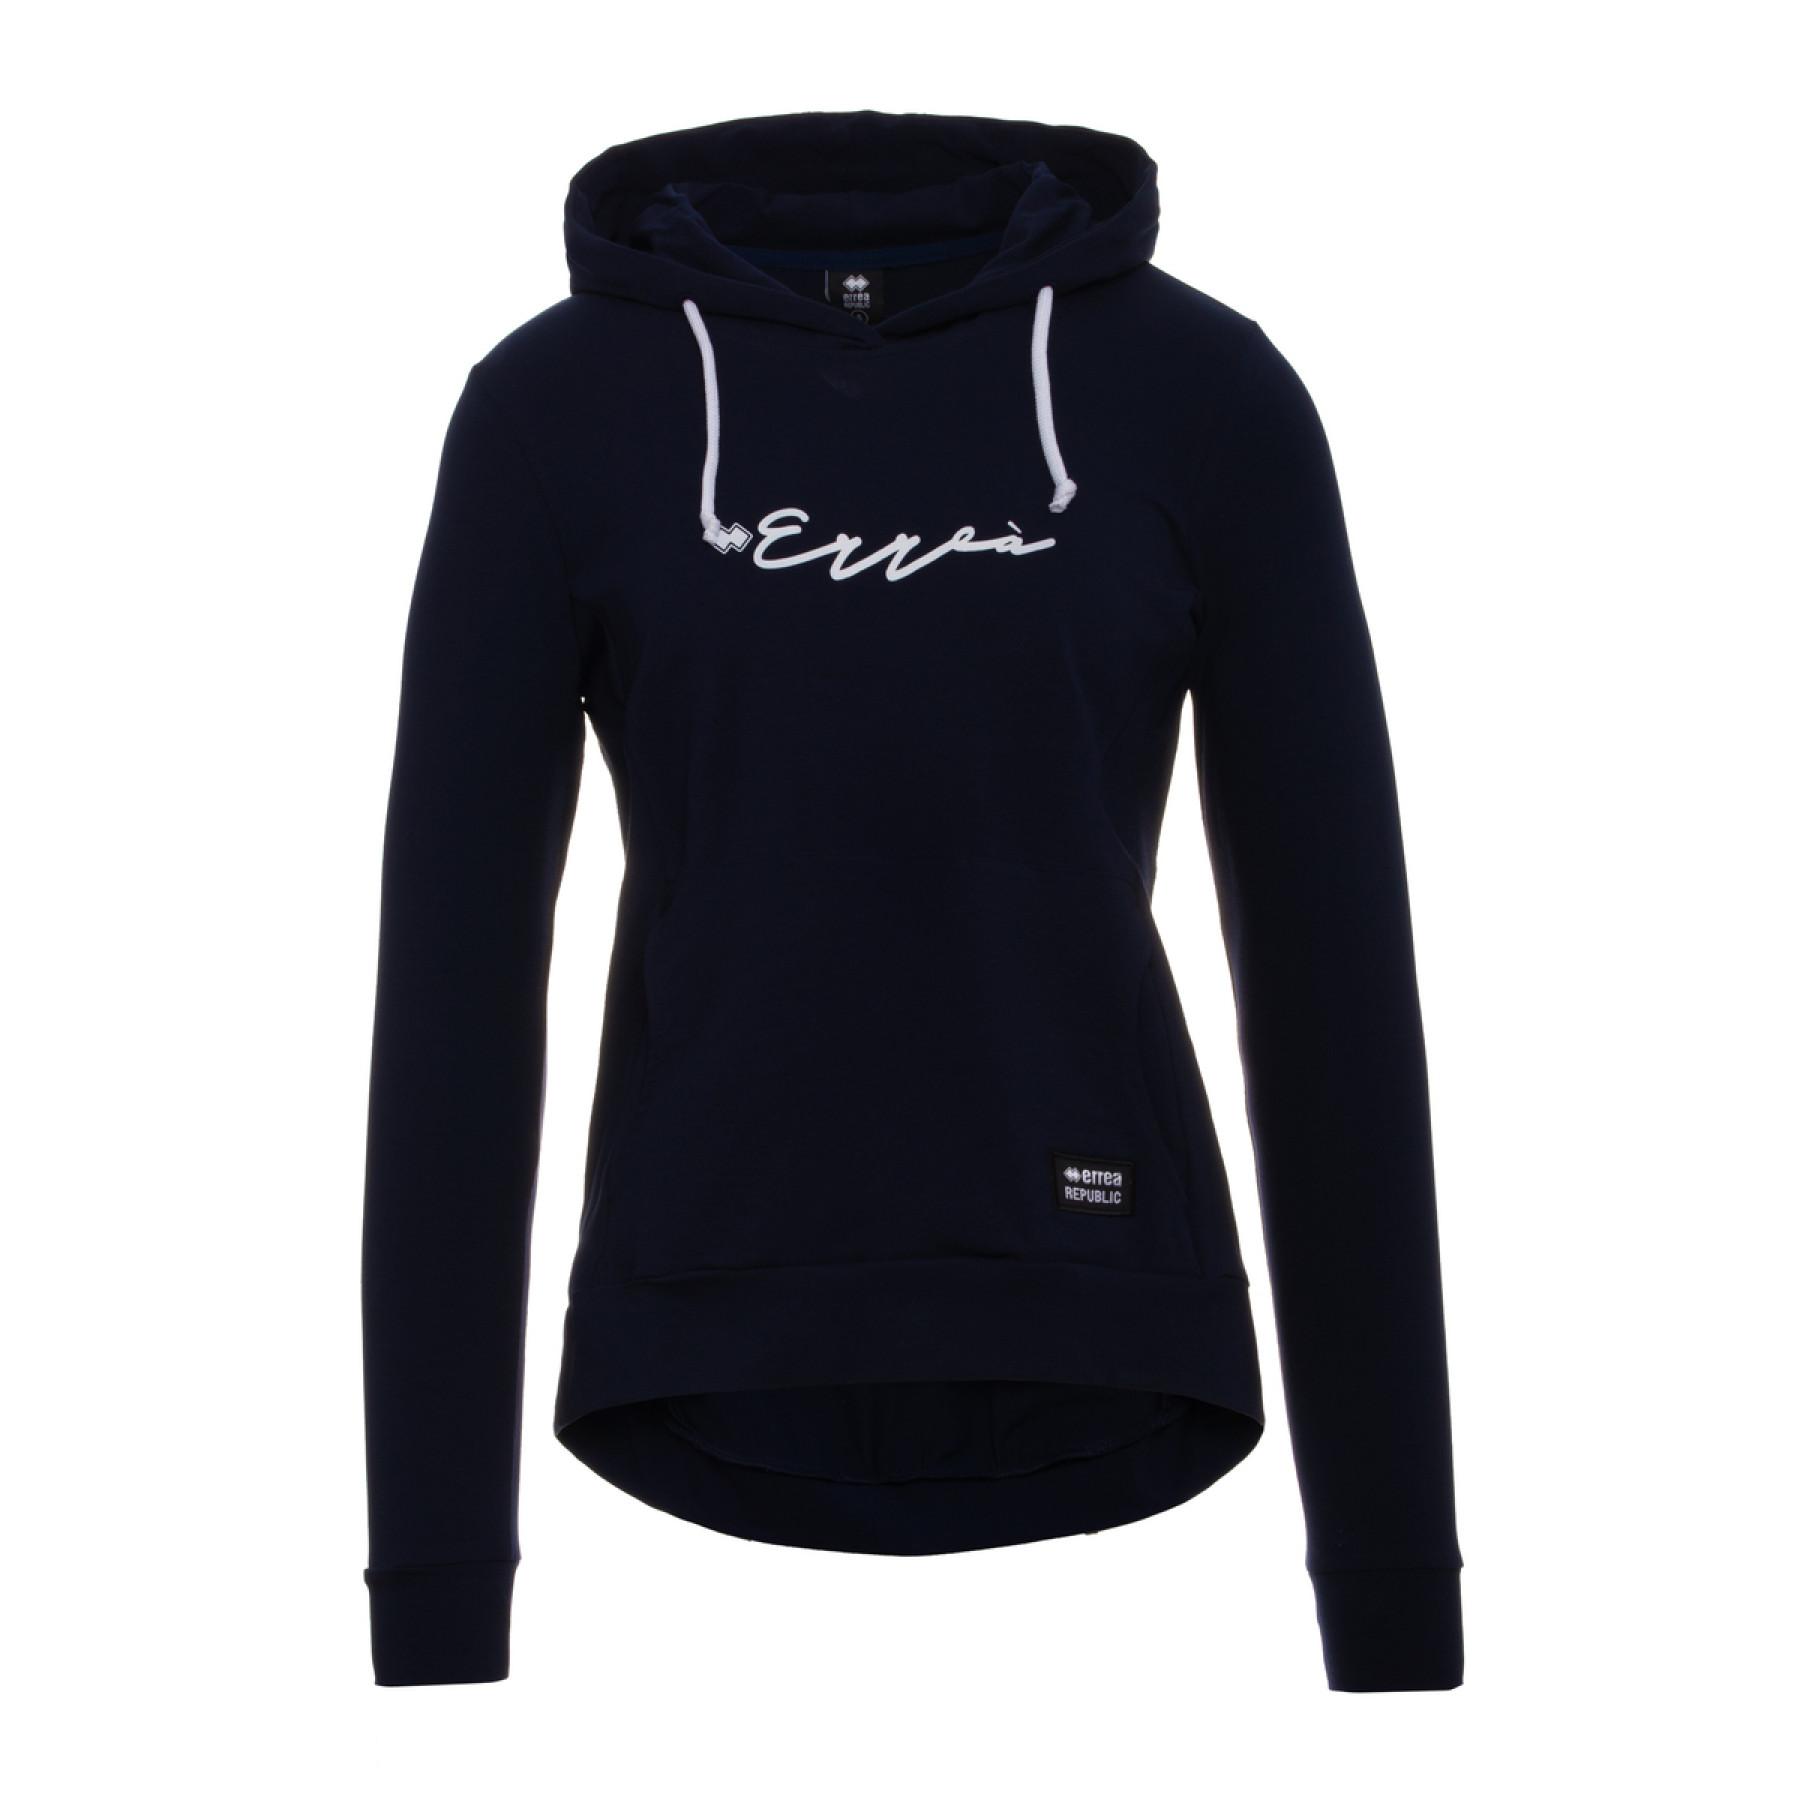 Sweatshirt femme Errea essential calligrafic logo